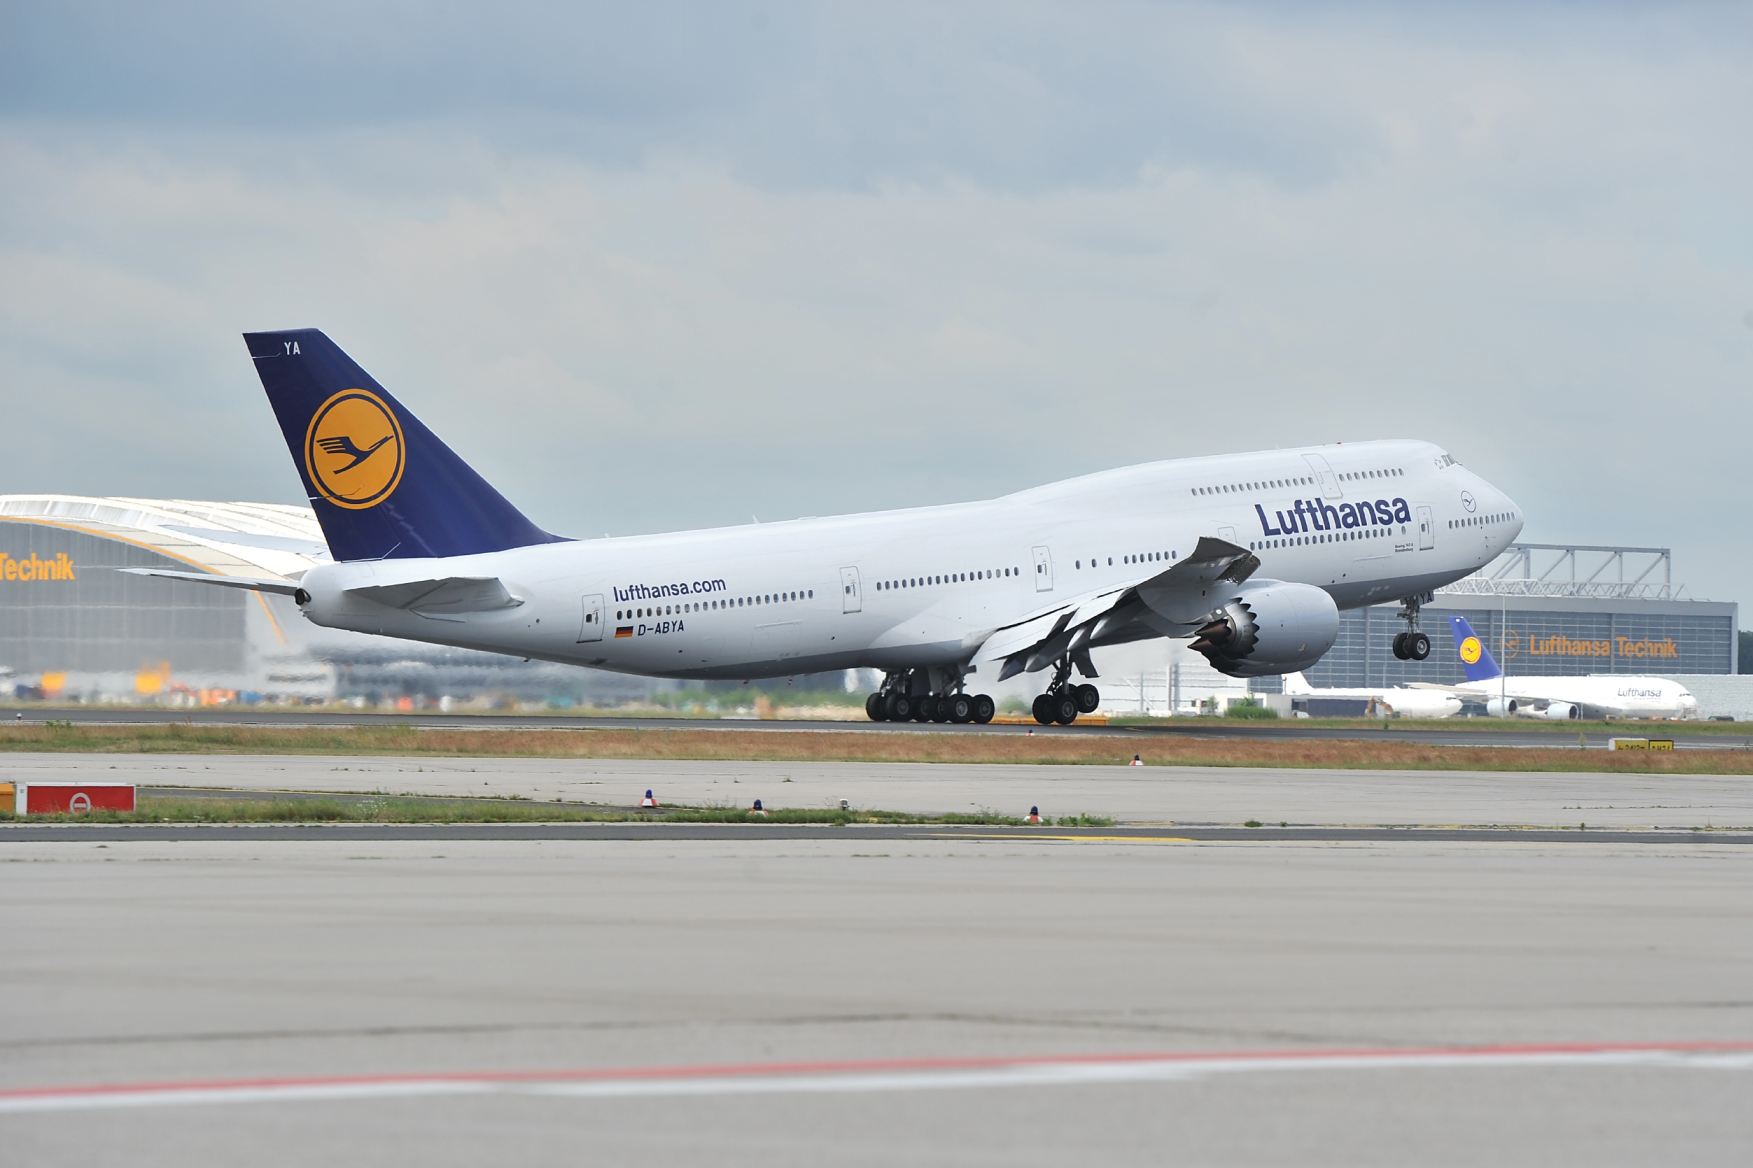 Az utasszállító változatból még kevesebb készült eddig, az első példányokkal a Lufthansa repül